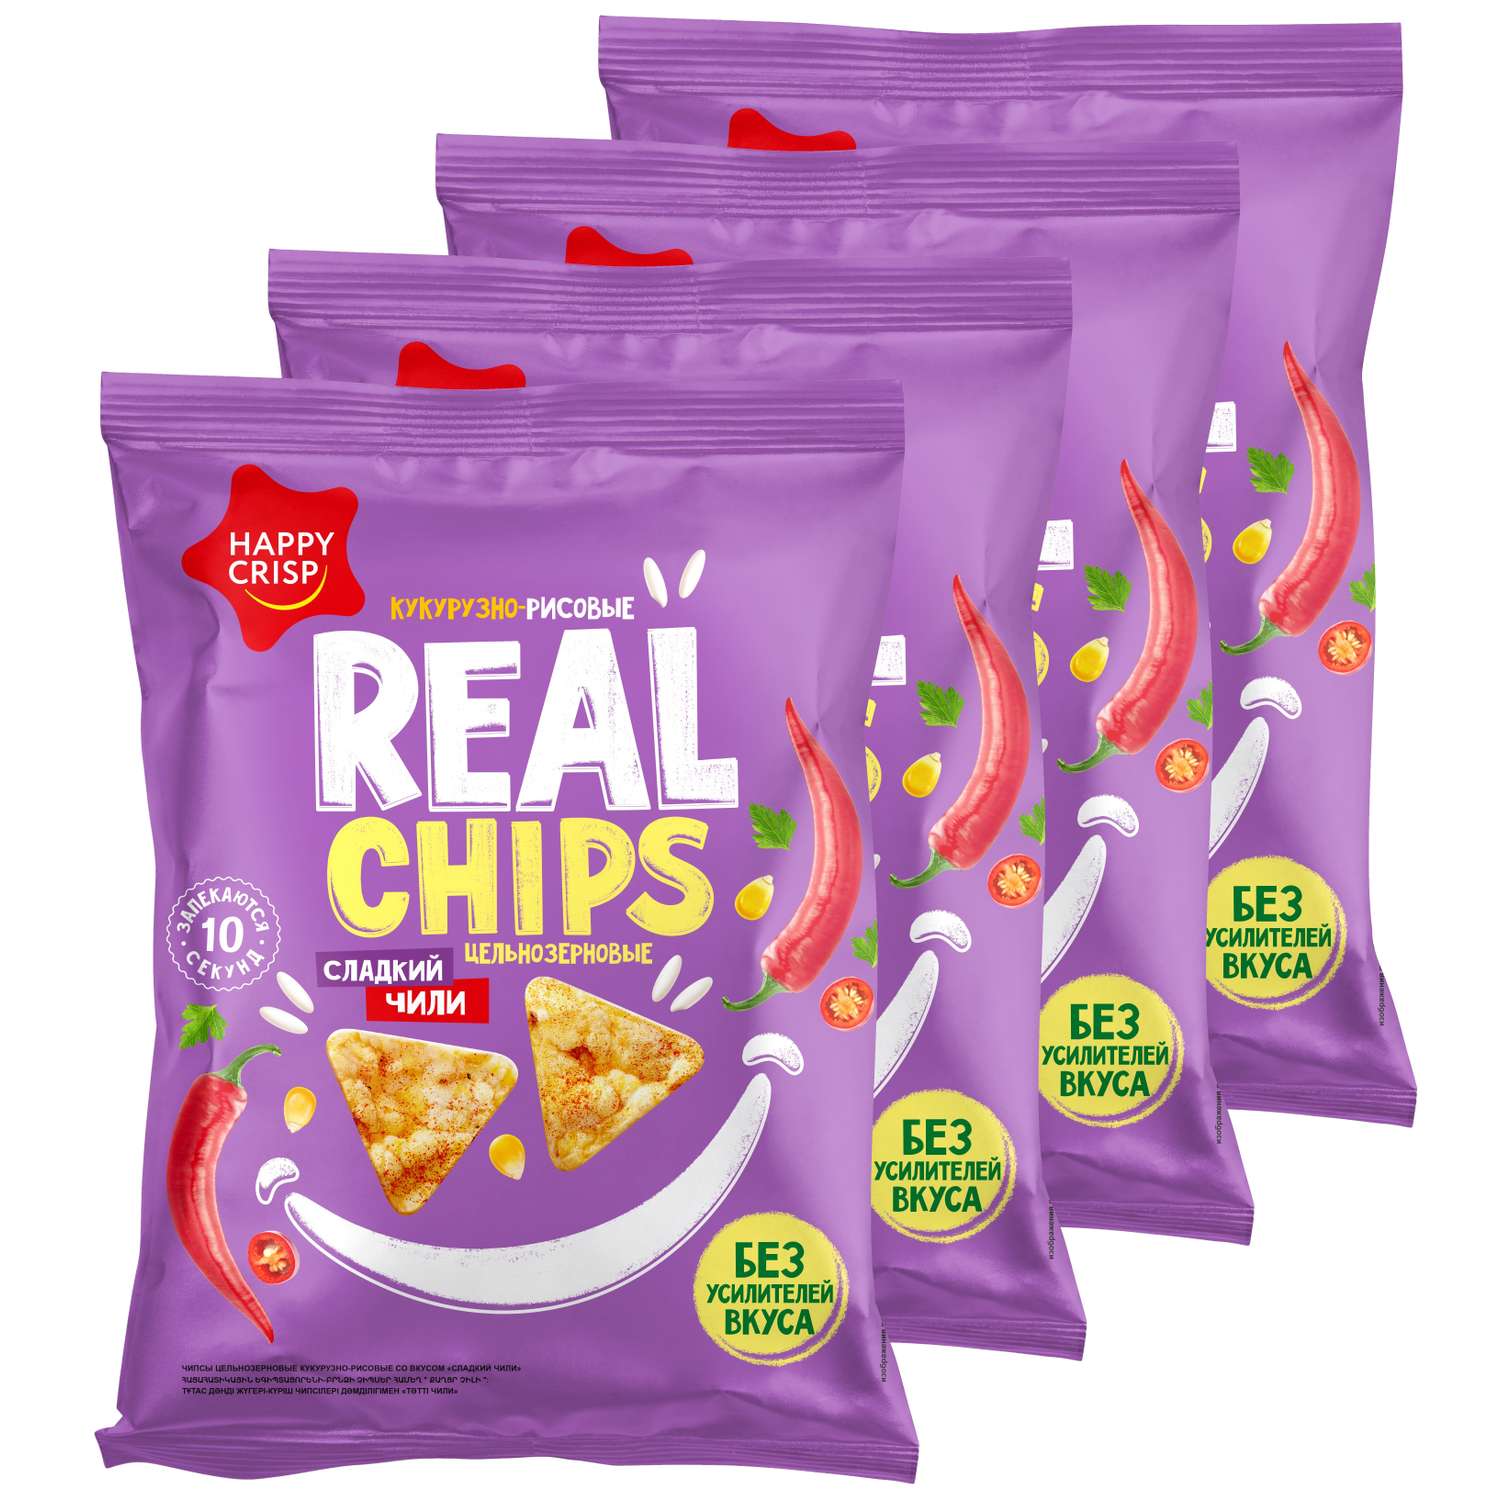 Чипсы цельнозерновые Happy Crisp кукурузно-рисовые Real Chips Сладкий Чили 4 шт по 50 г - фото 1